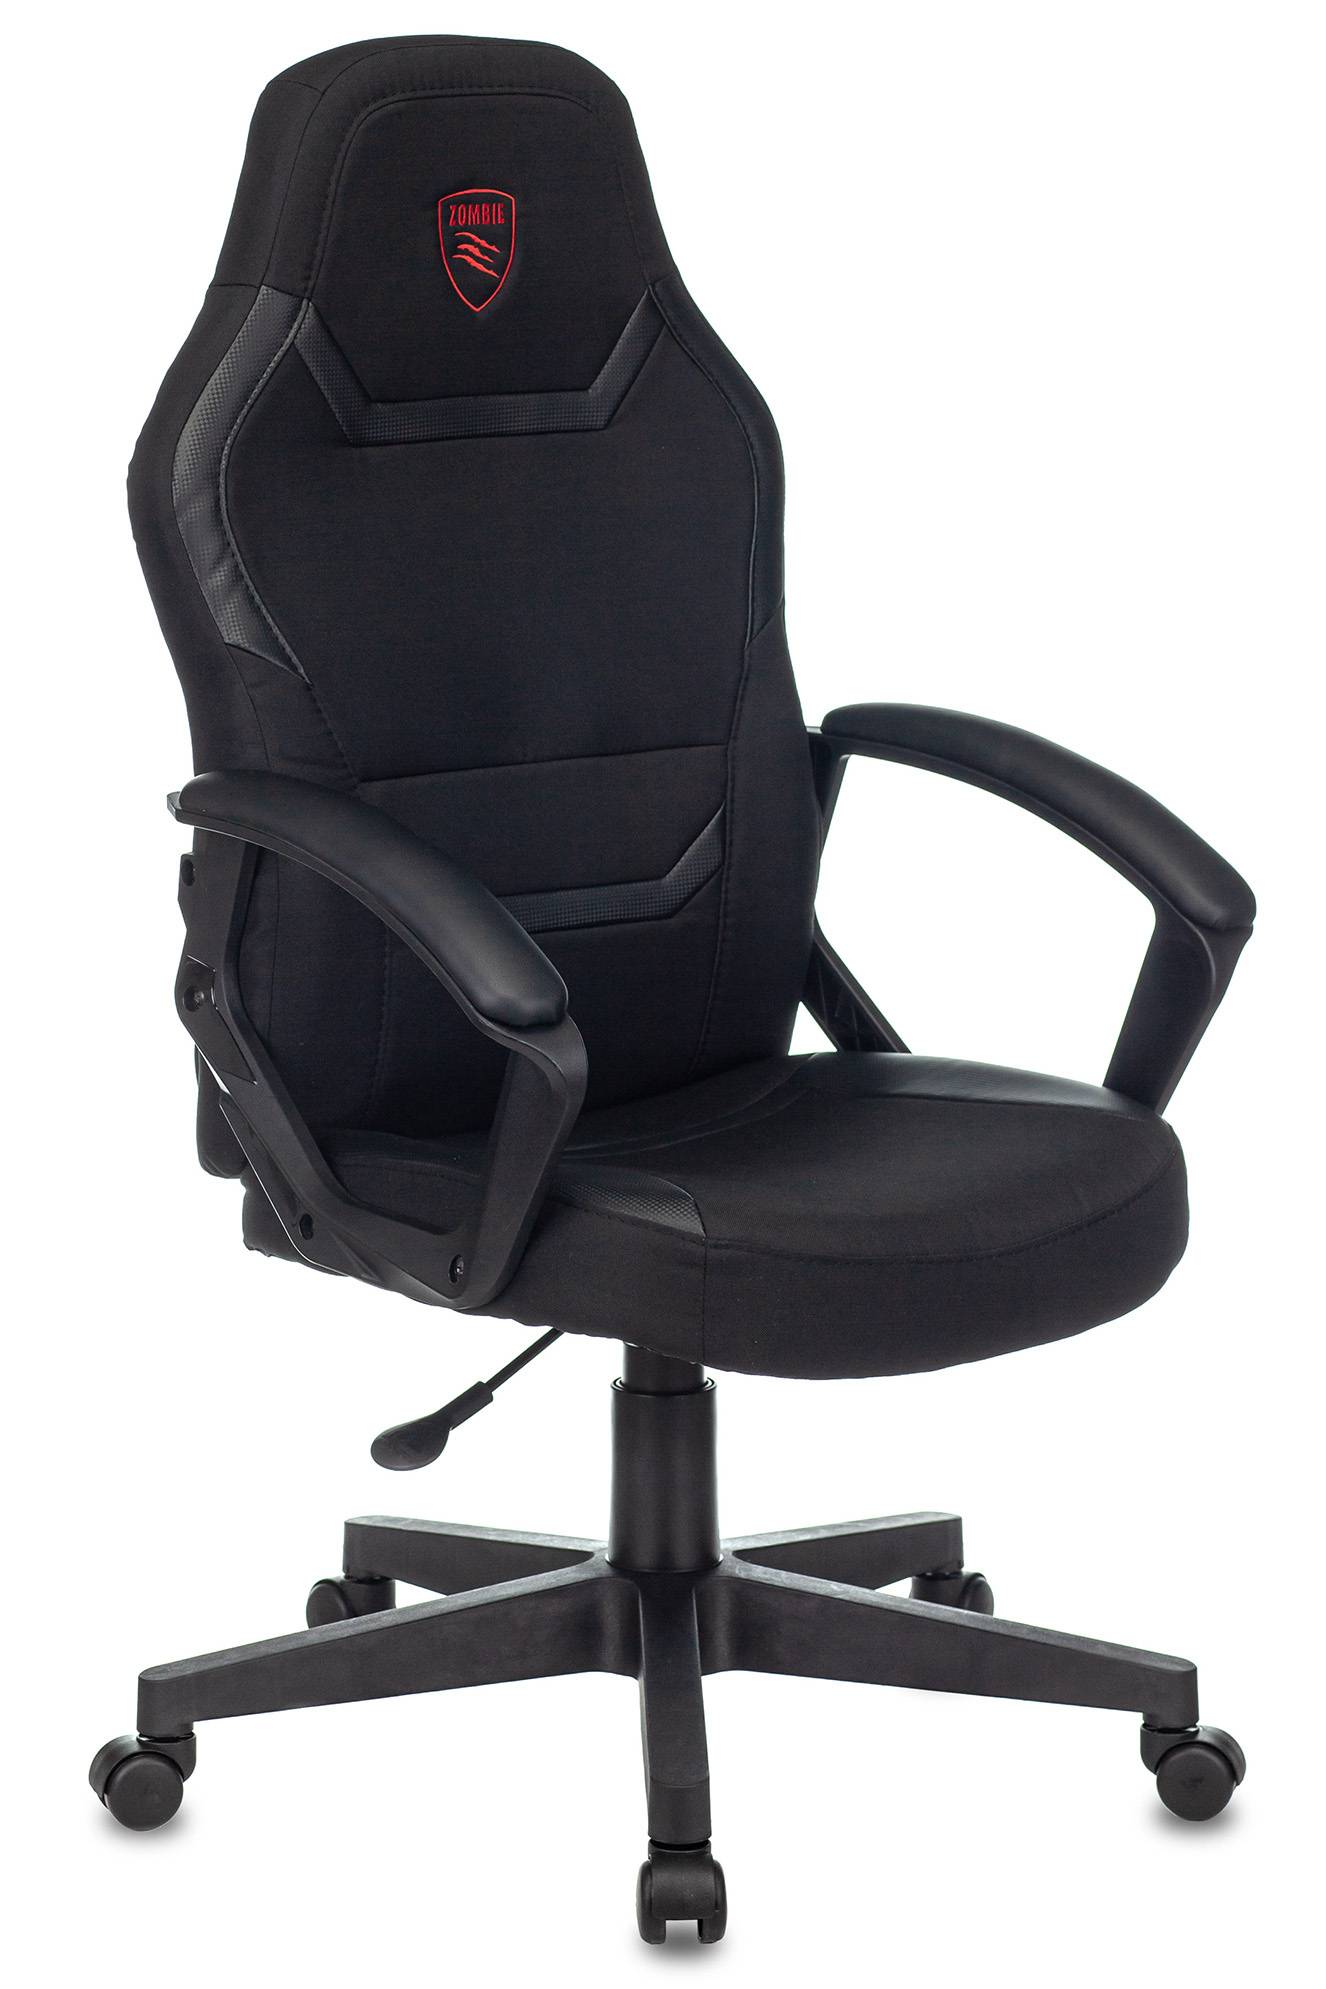 Кресло игровое Zombie 10, обивка: ткань/экокожа, цвет: черный